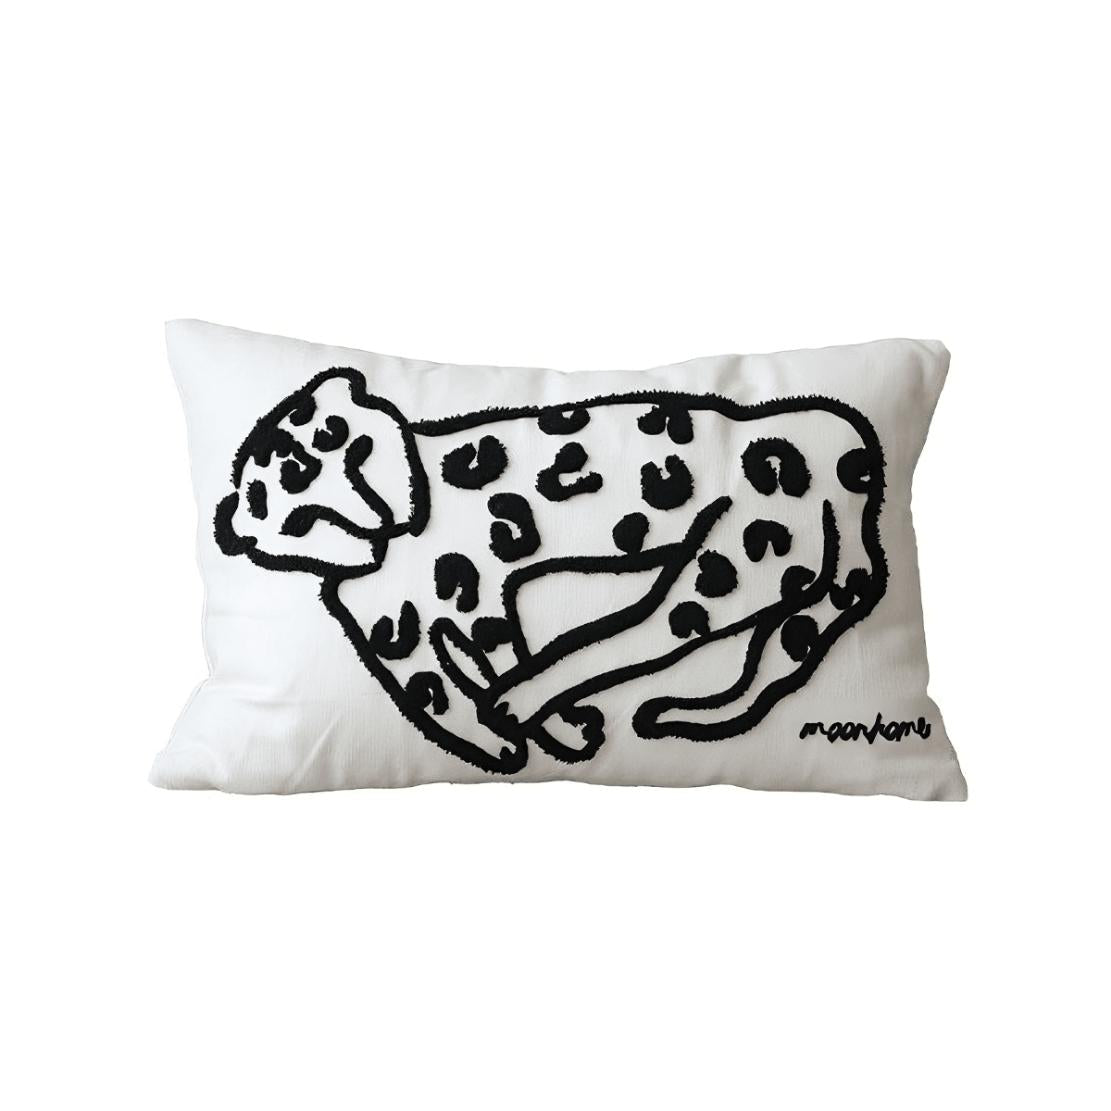 Black & white leopard art throw pillow